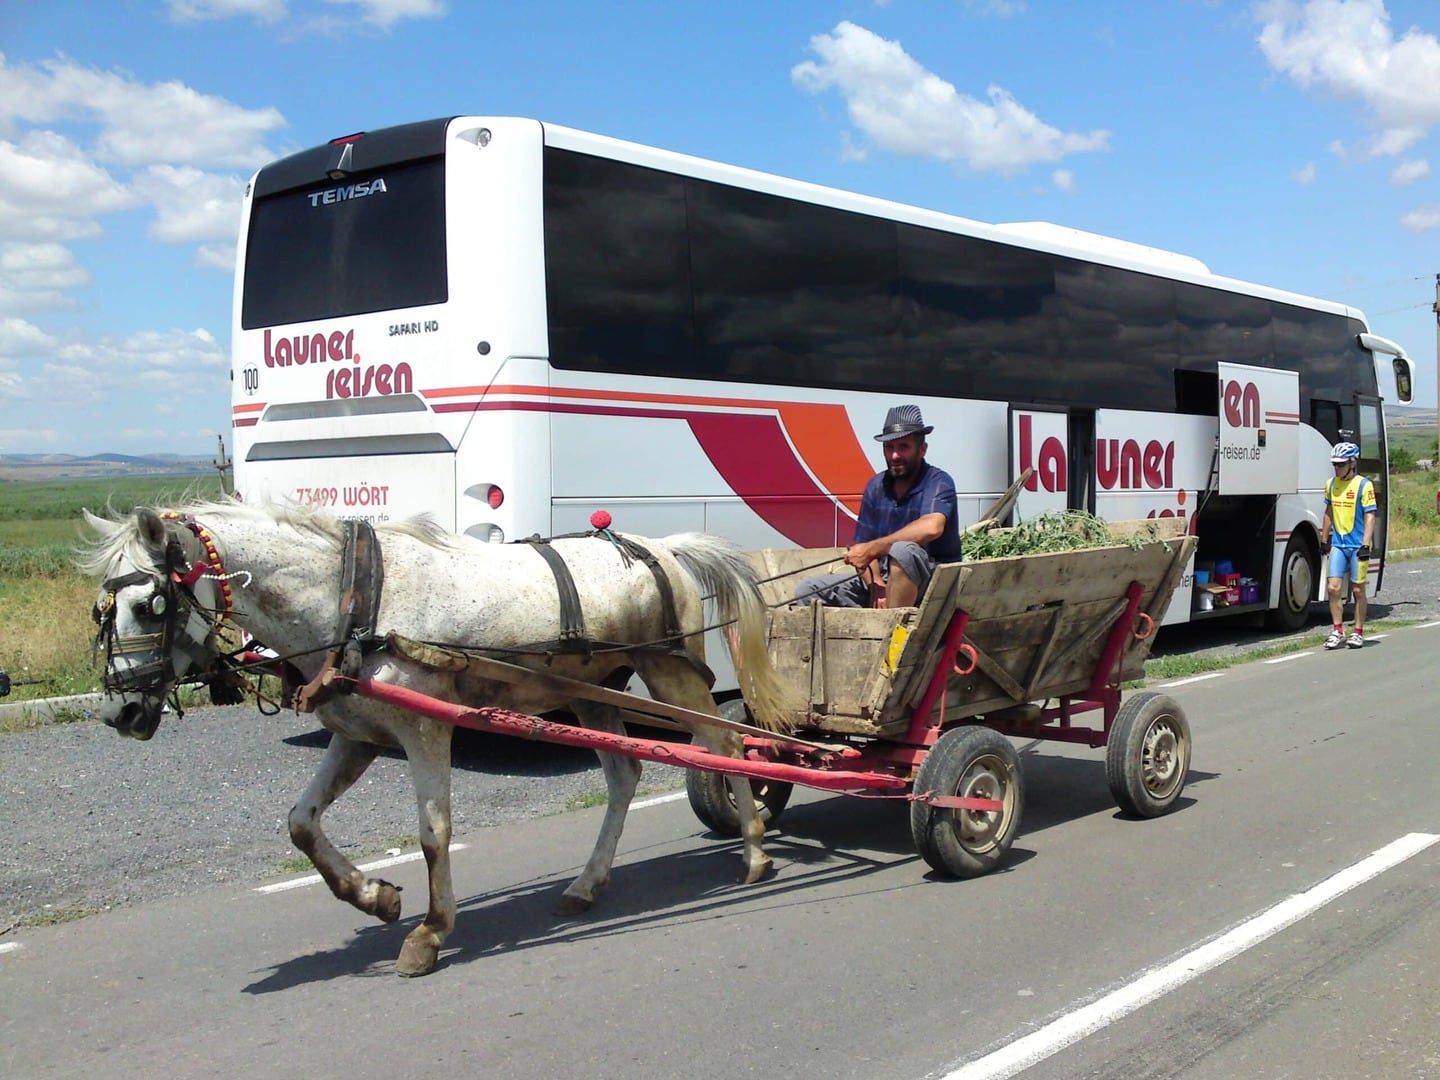 Rennradreise Rumänien Karpaten, einer der vielen Pferdekarren passiert den am Straßenrand abgestellten Launer-Bus